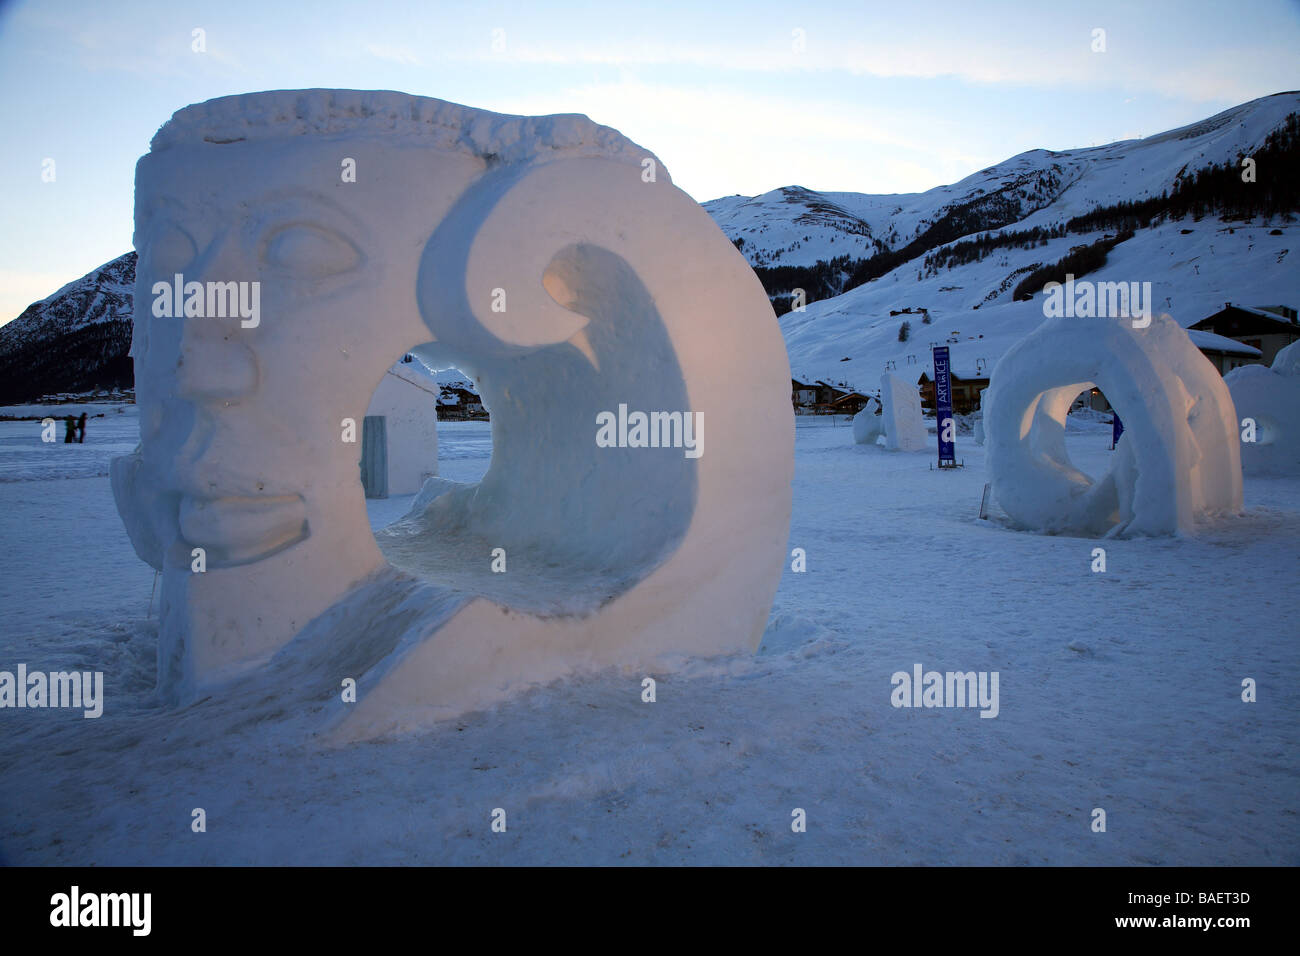 Sculture di ghiaccio, Livigno, Lombardia, Italia Foto stock - Alamy